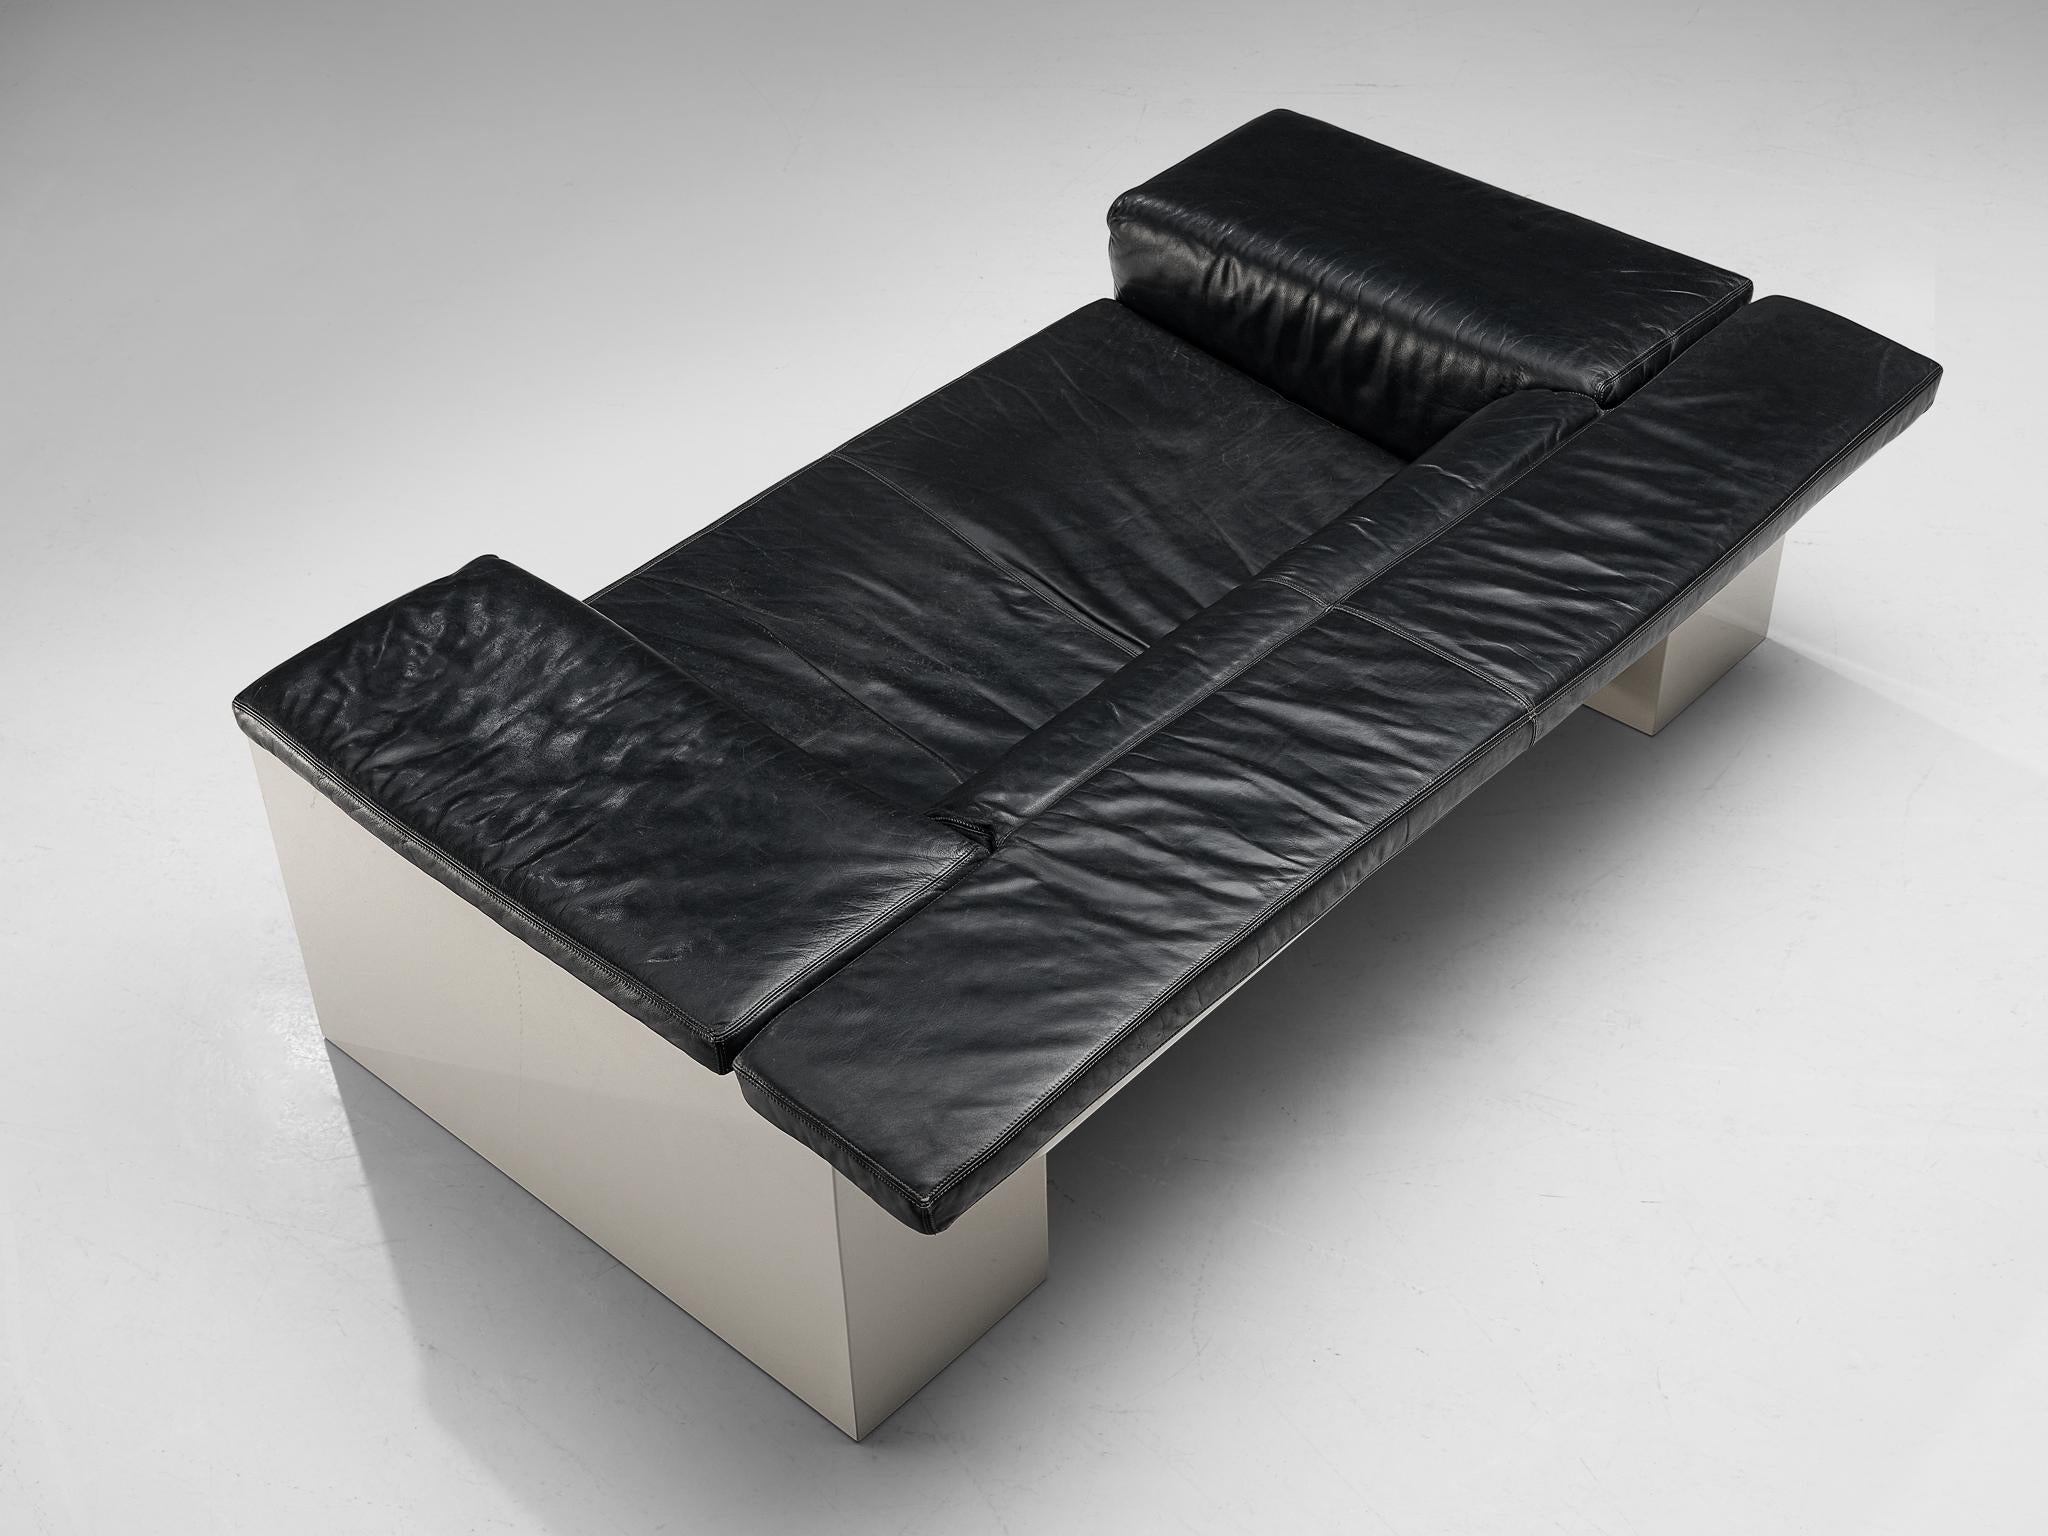 Cini Boeri for Knoll 'Brigadiere' Sofa in Black Leather